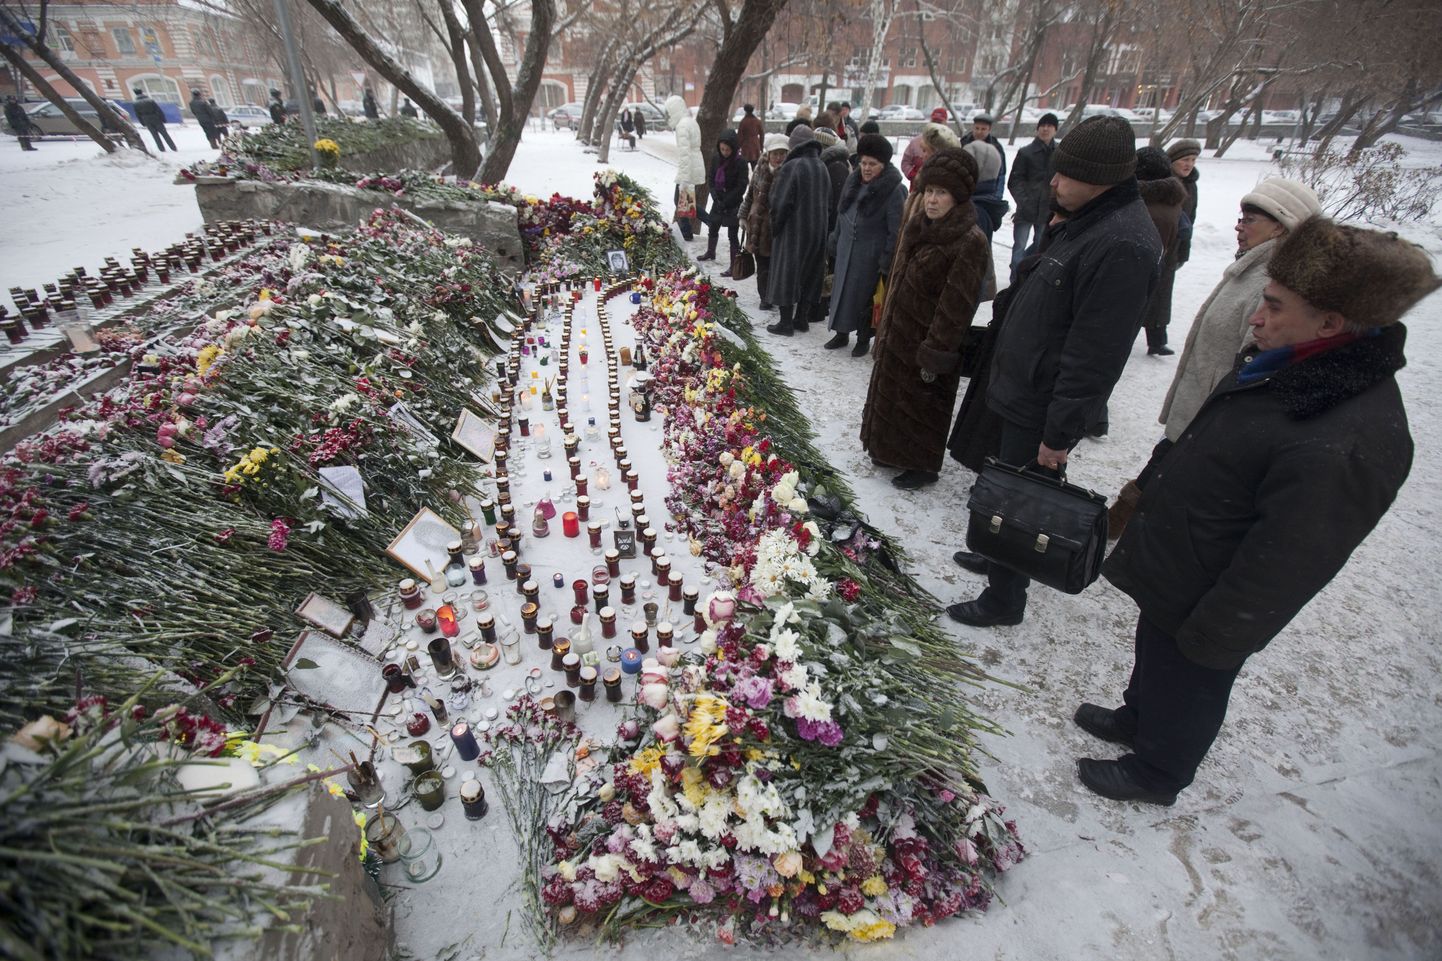 Inimesed tulekahjuohvrite mälestuseks toodud lillede ja küünalde juures Permis.